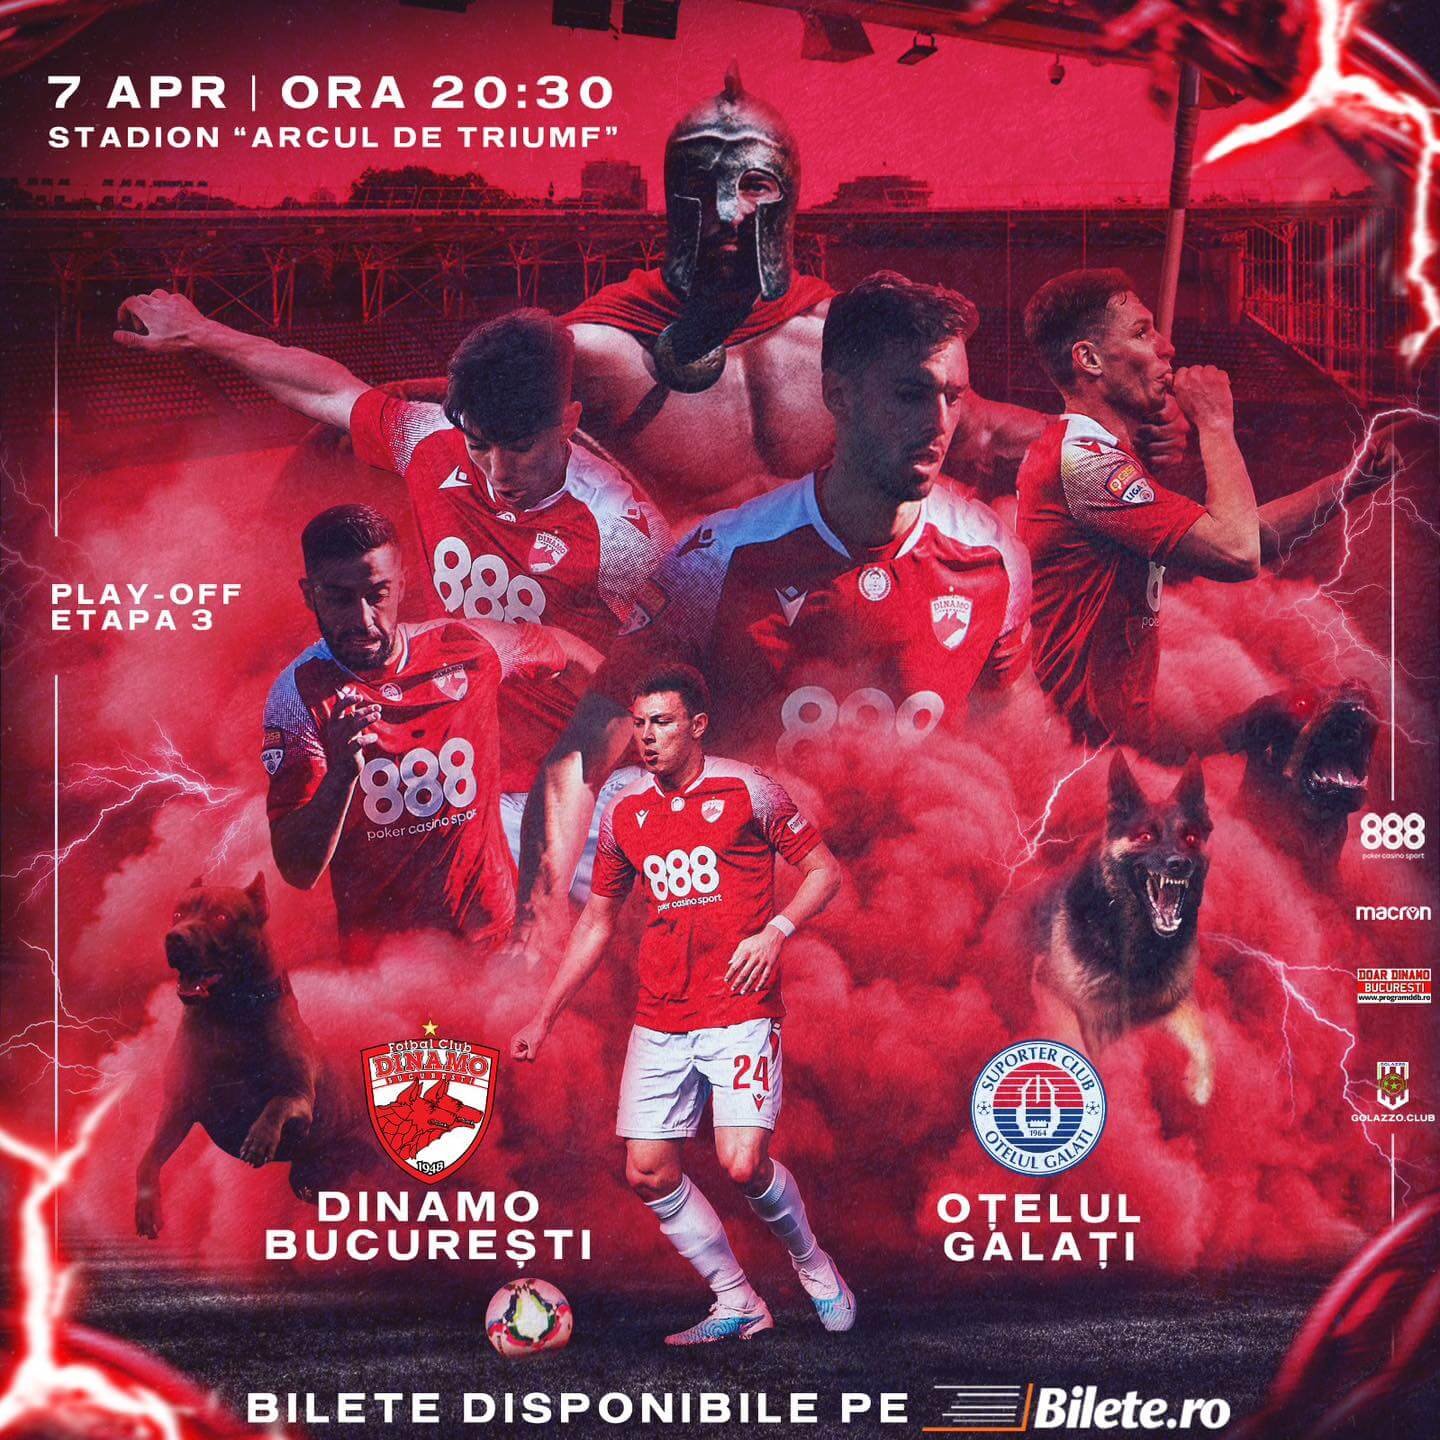 Dinamo Bucuresti - Otelul Galati - 07 apr 2023